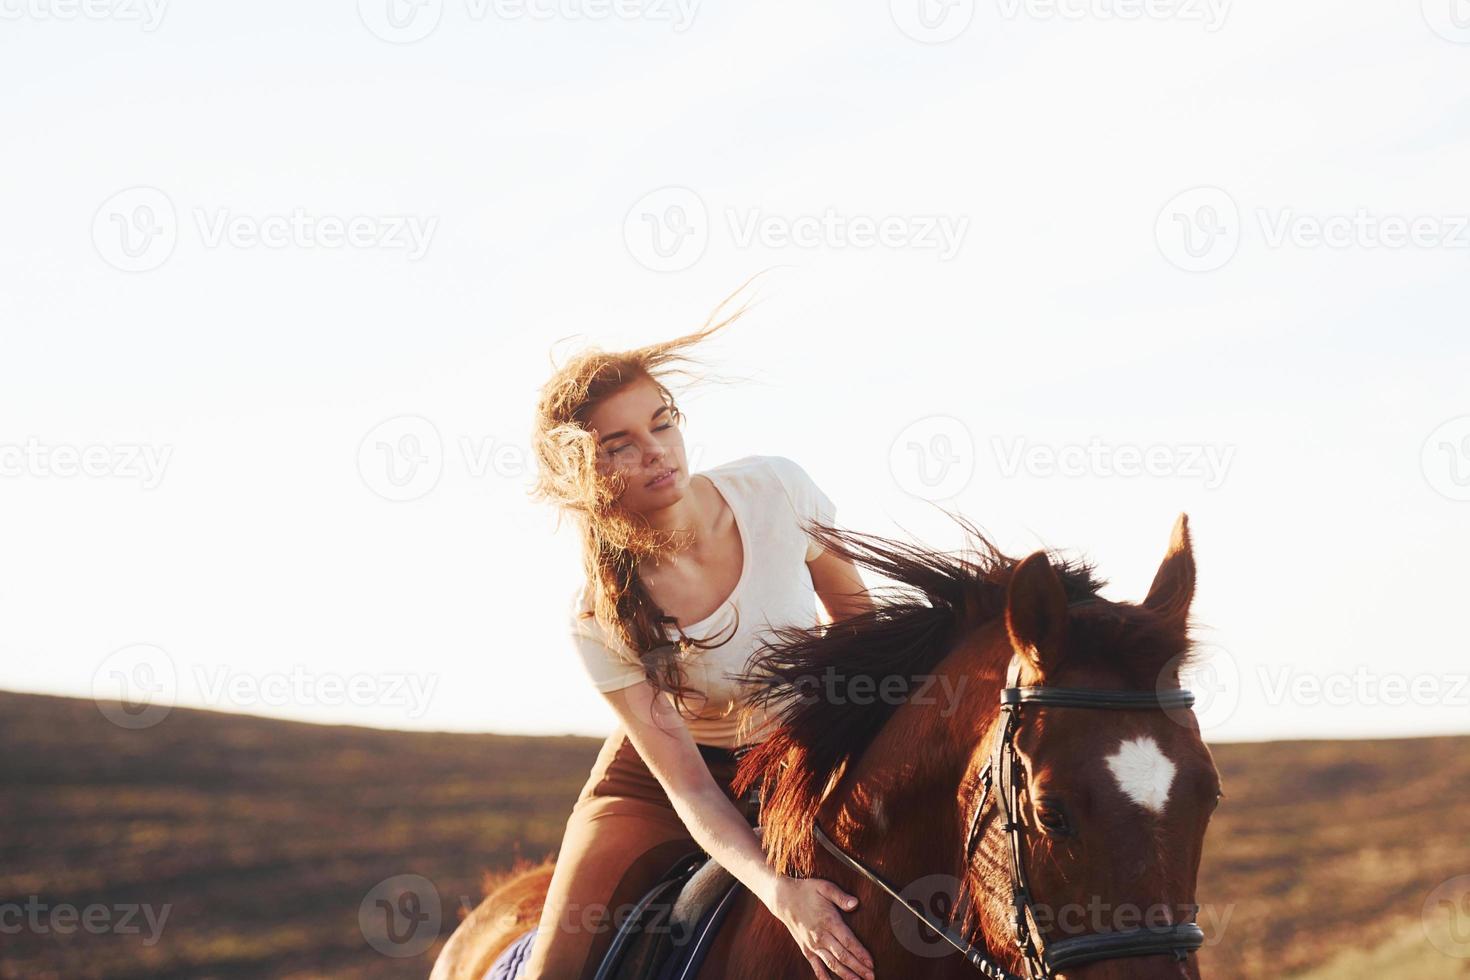 jovem de chapéu protetor com seu cavalo no campo agrícola durante o dia ensolarado foto